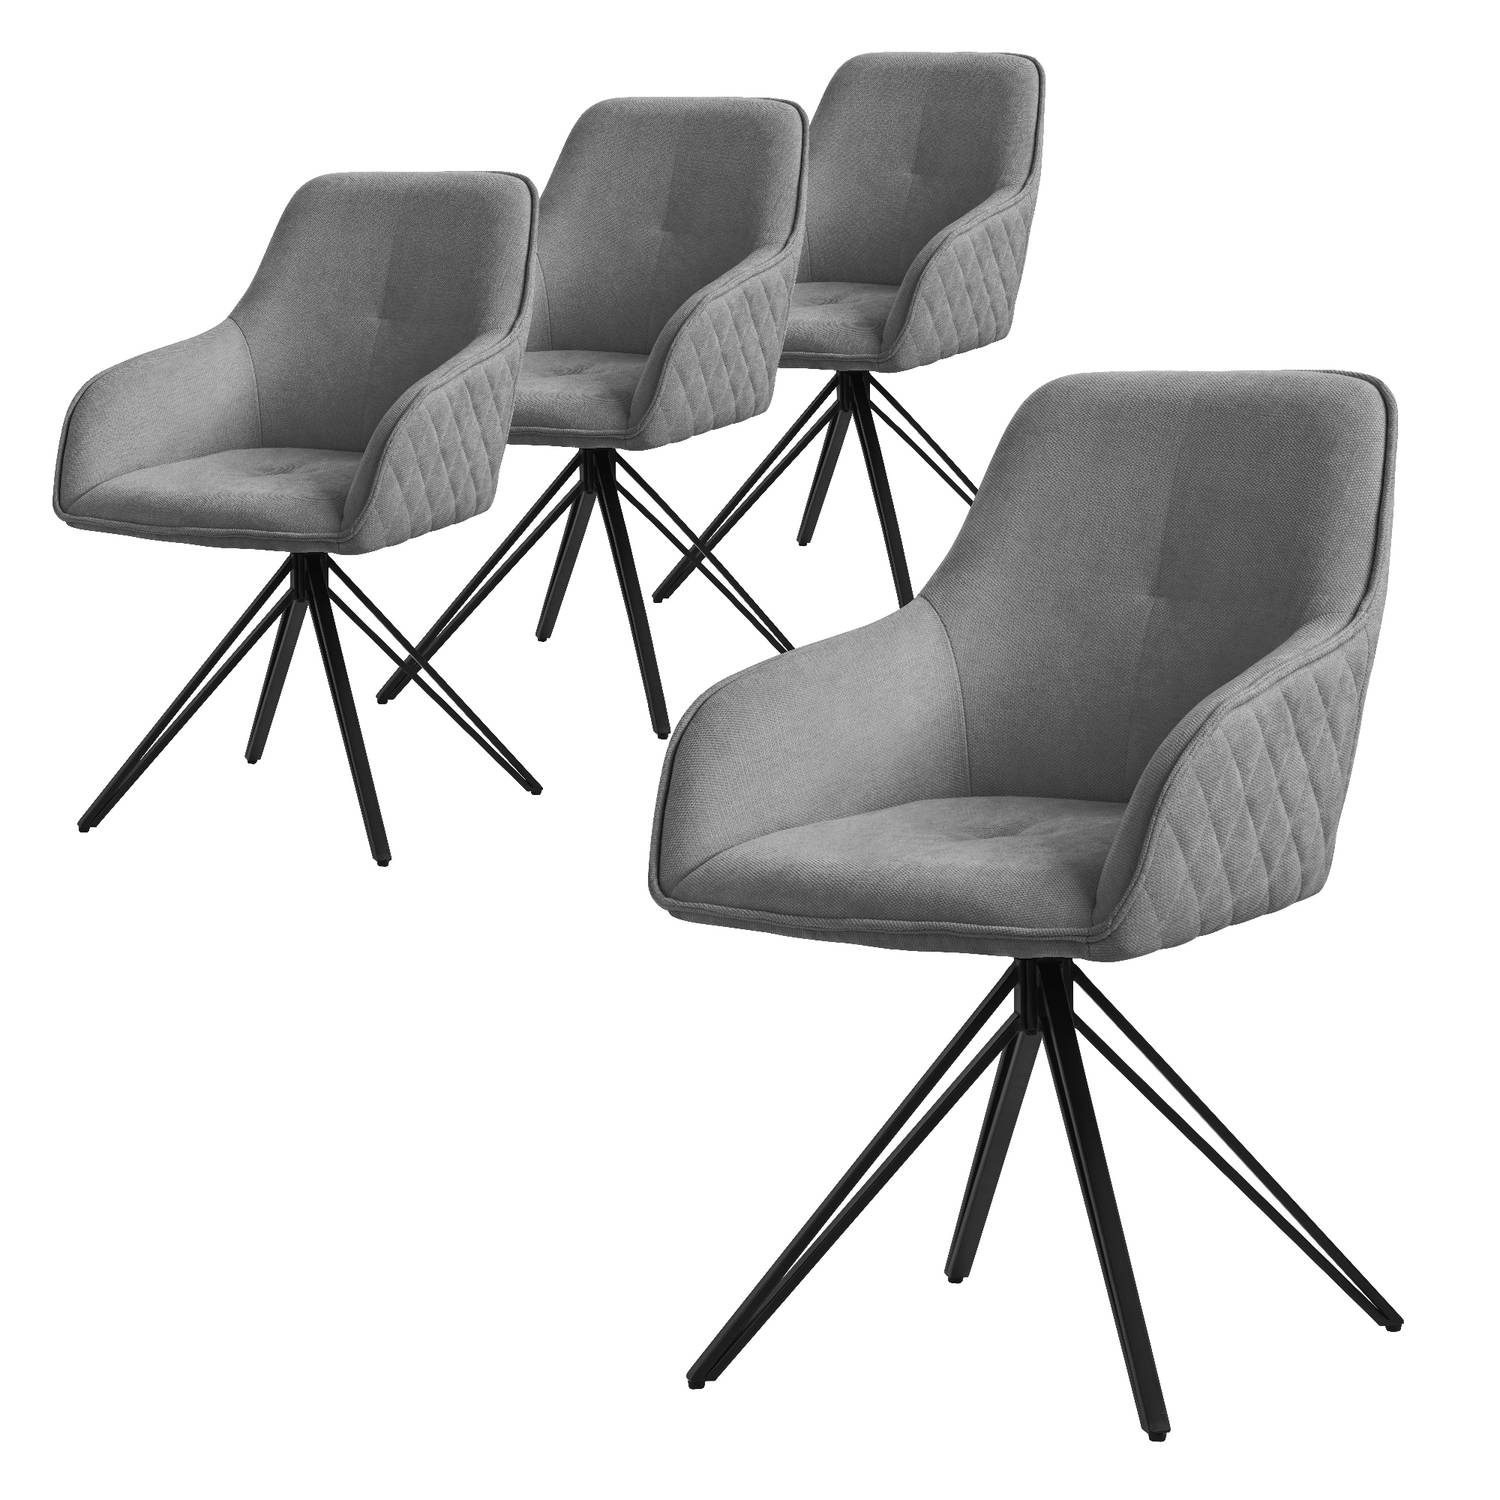 ML-Design eetkamerstoelen draaibaar set van 4, textiel geweven stof, grijs, woonkamerstoel met armleuning/rugleuning, 360° draaibare stoel, gestoffeerde stoel met metalen poten, er